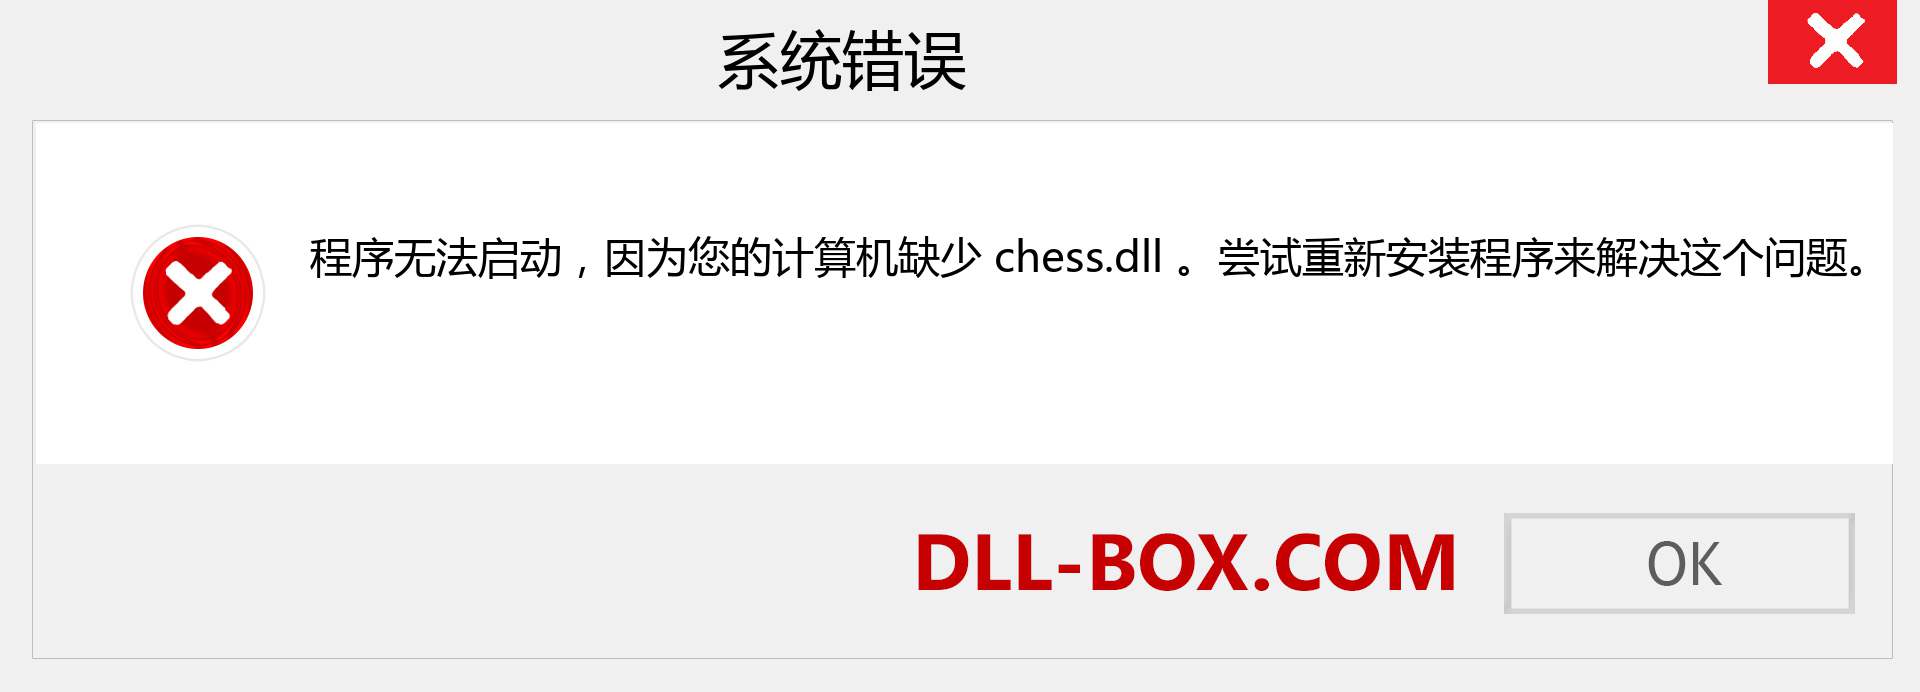 chess.dll 文件丢失？。 适用于 Windows 7、8、10 的下载 - 修复 Windows、照片、图像上的 chess dll 丢失错误